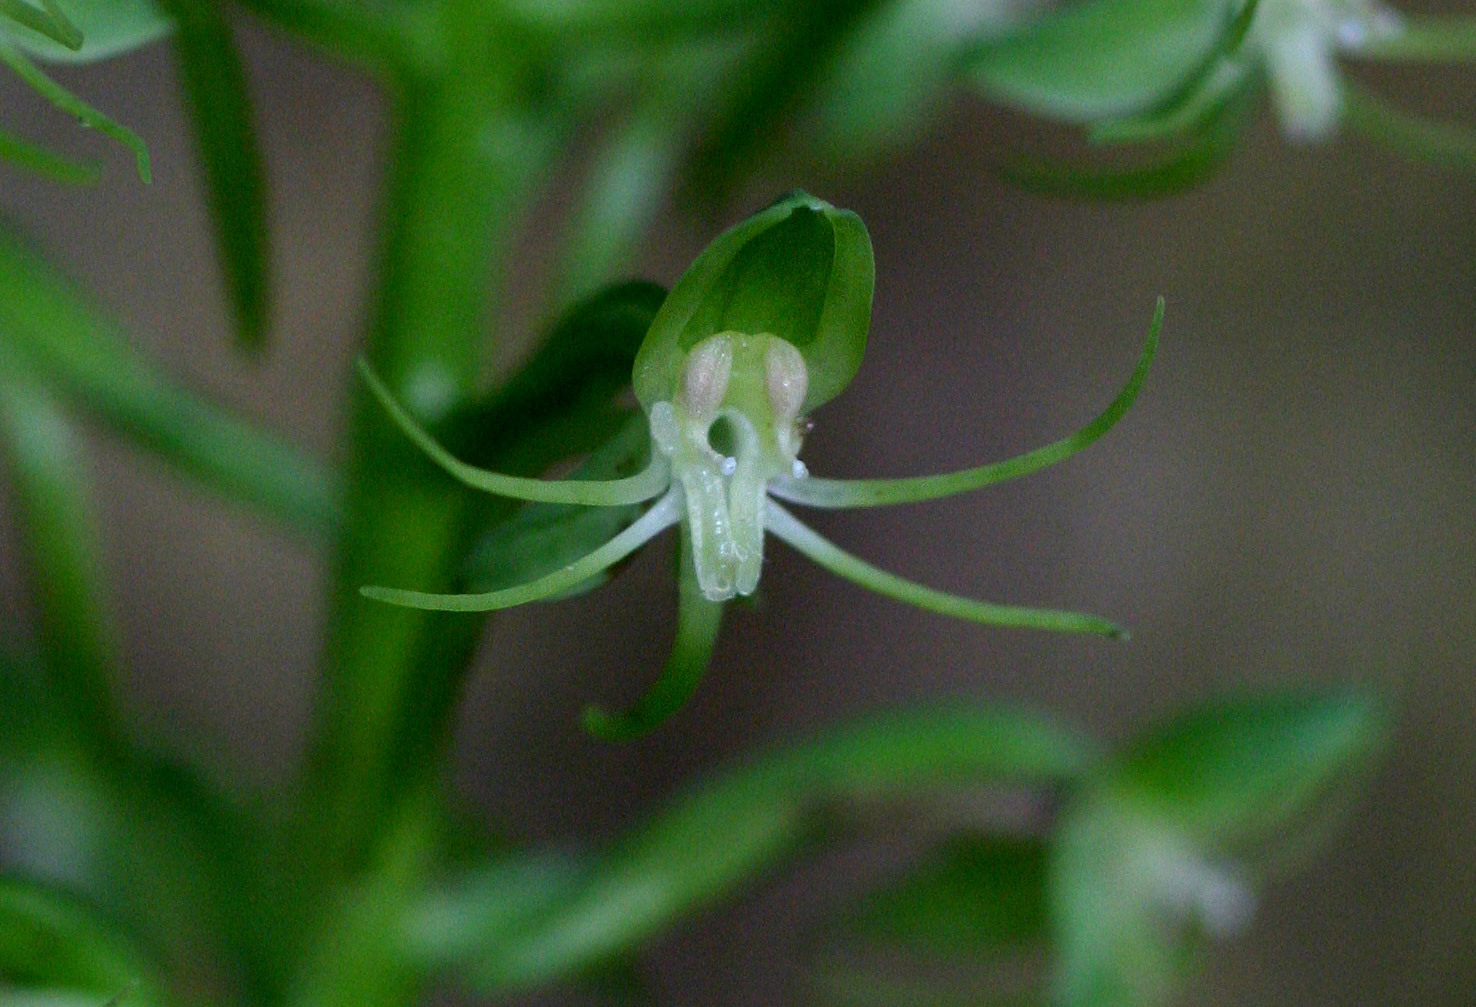 Habenaria malacophylla